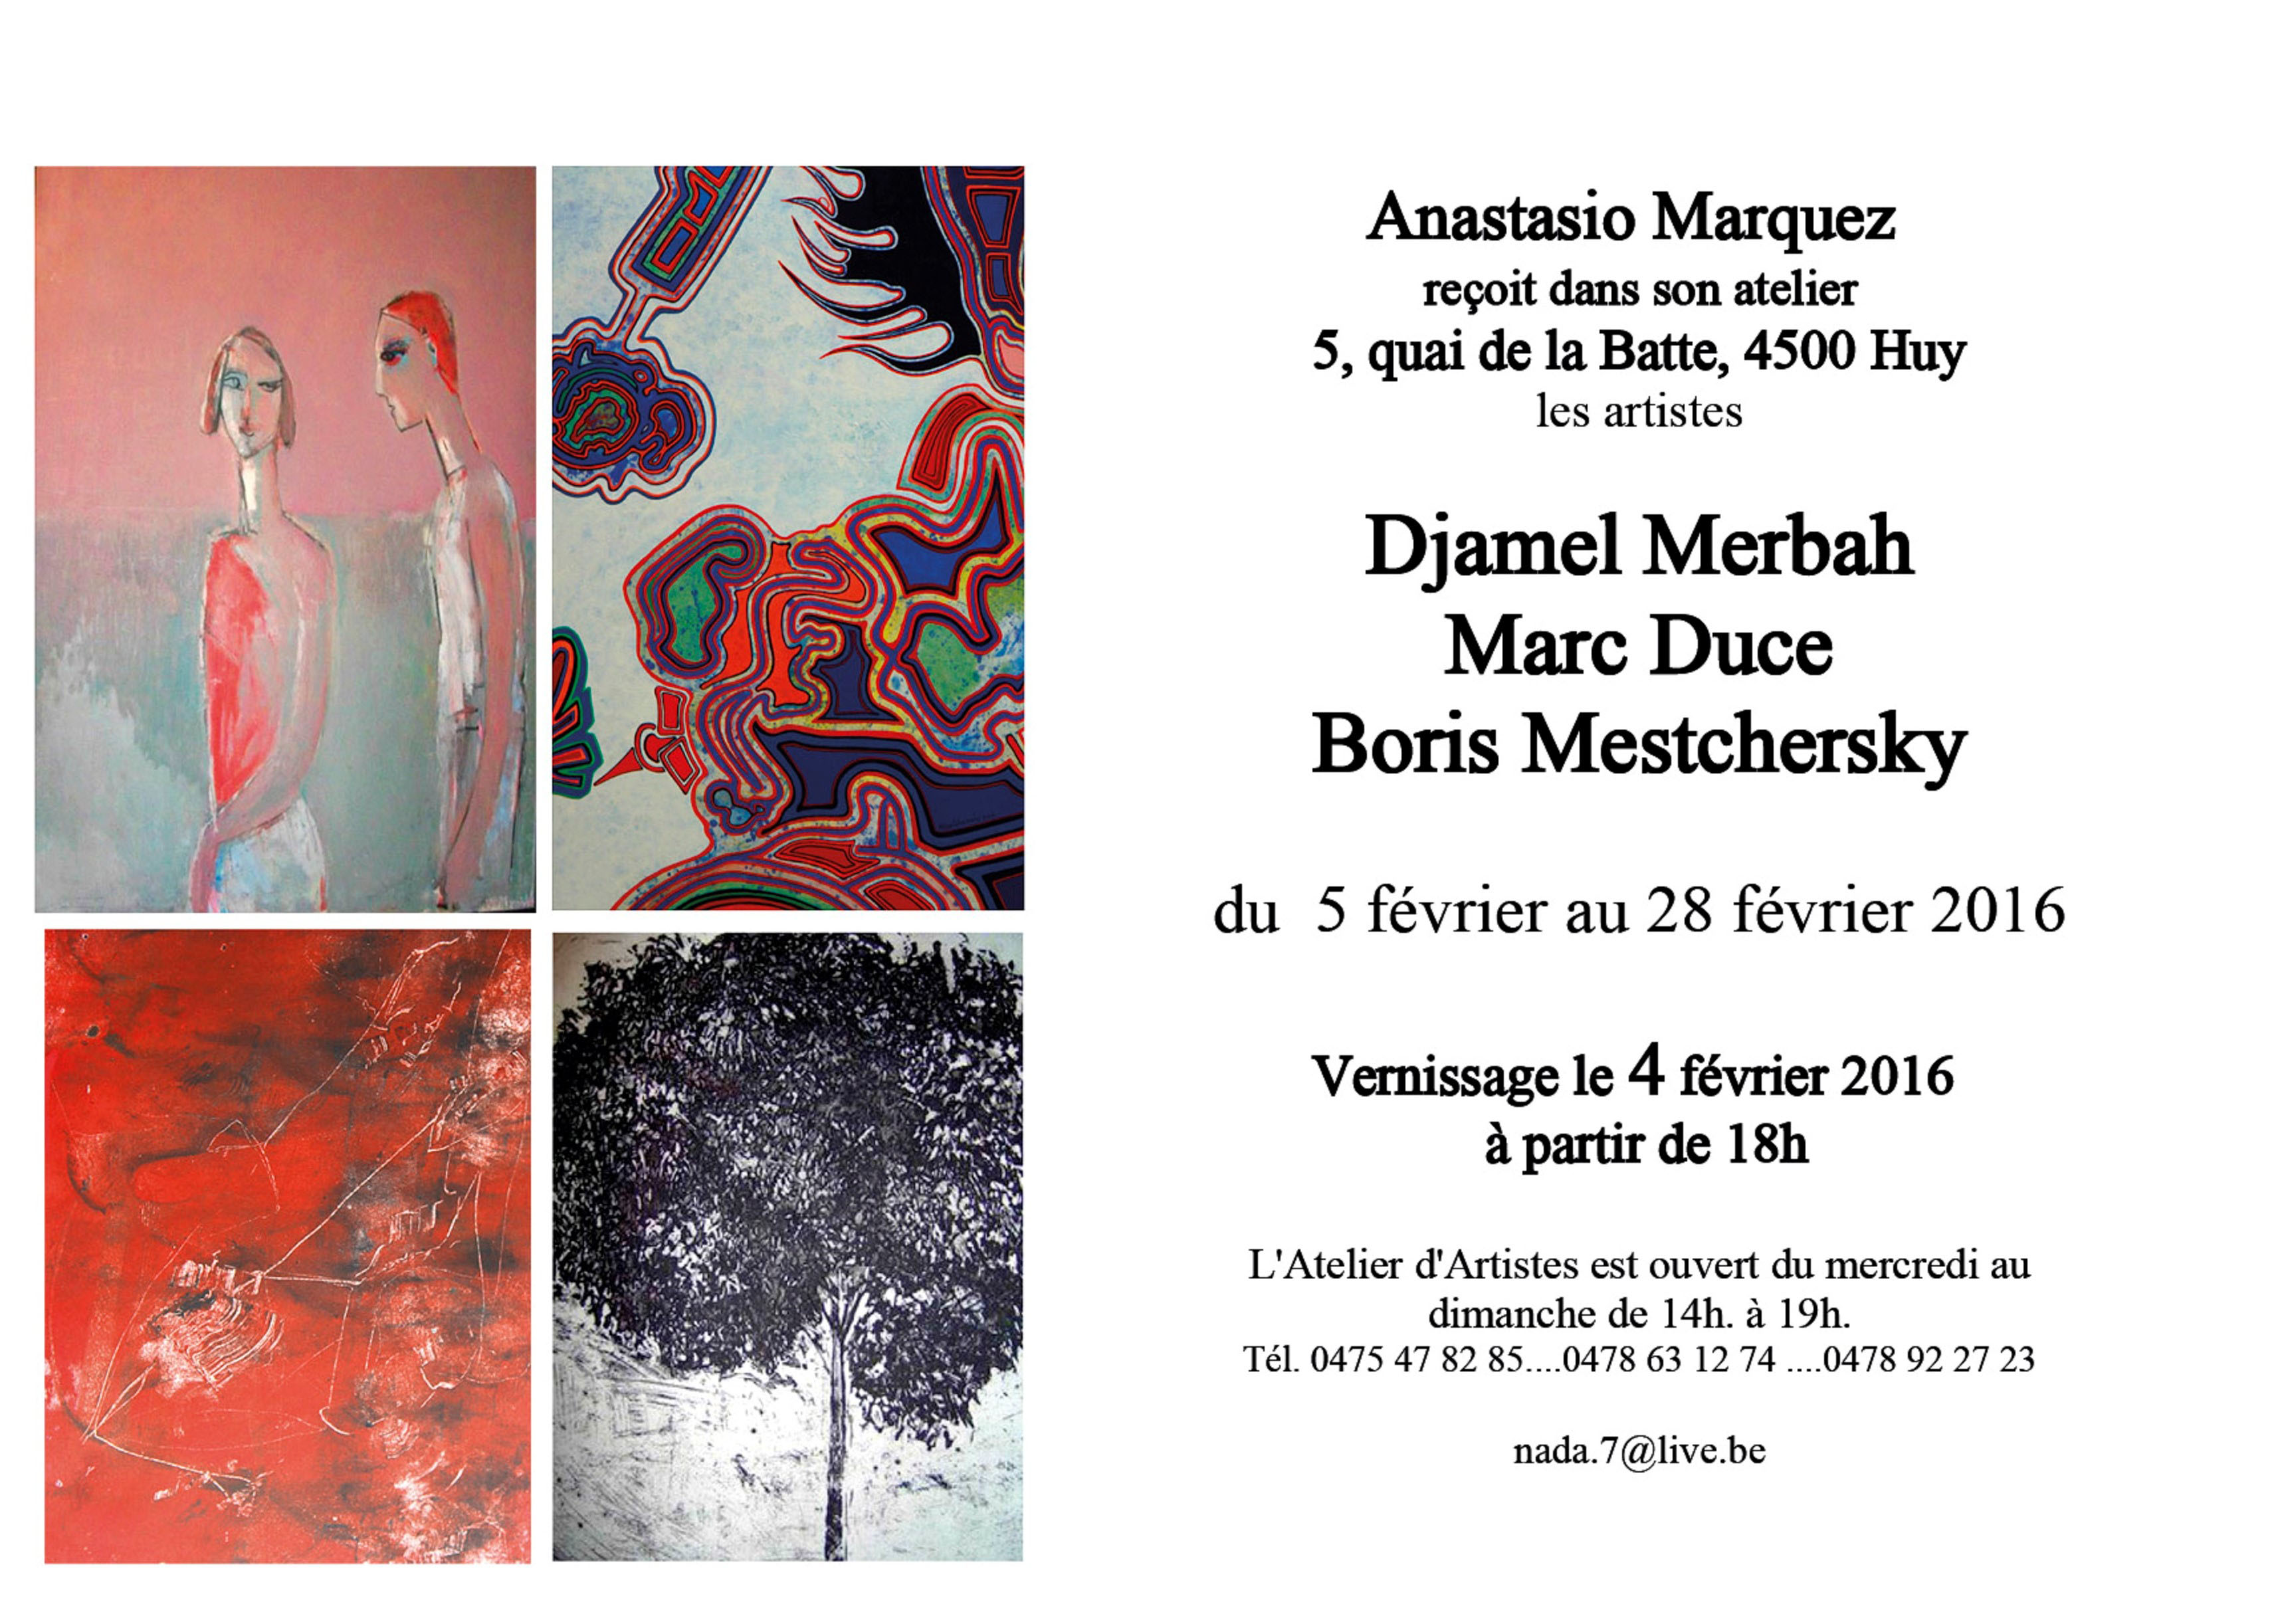 Anastasio Marquez reçoit dans son atelier Djamel Merbach, Marc Duce et Boris Mestchersky.